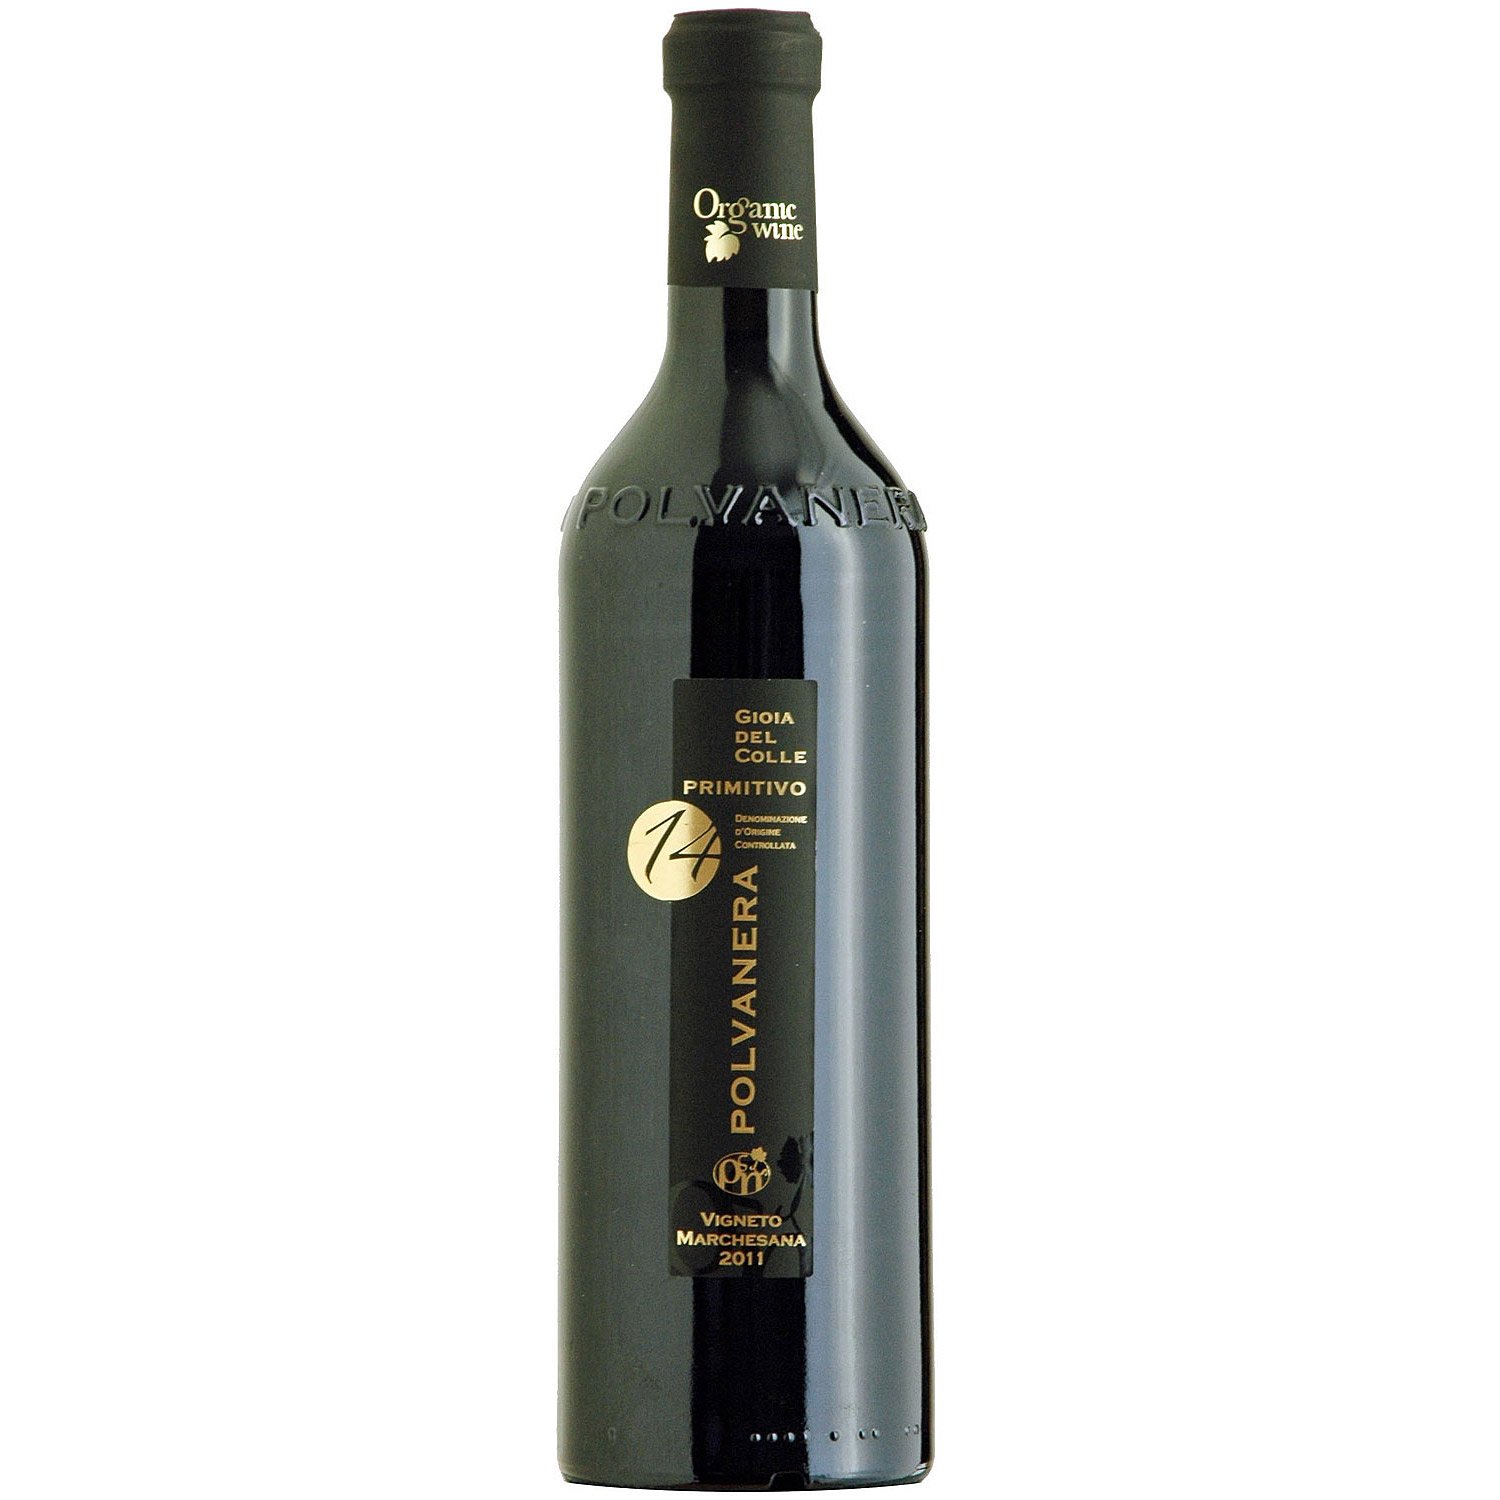 Italienischer Rotwein Polvanera 14 Gioia del Colle Primitivo Vigneto Marchesana 2015 